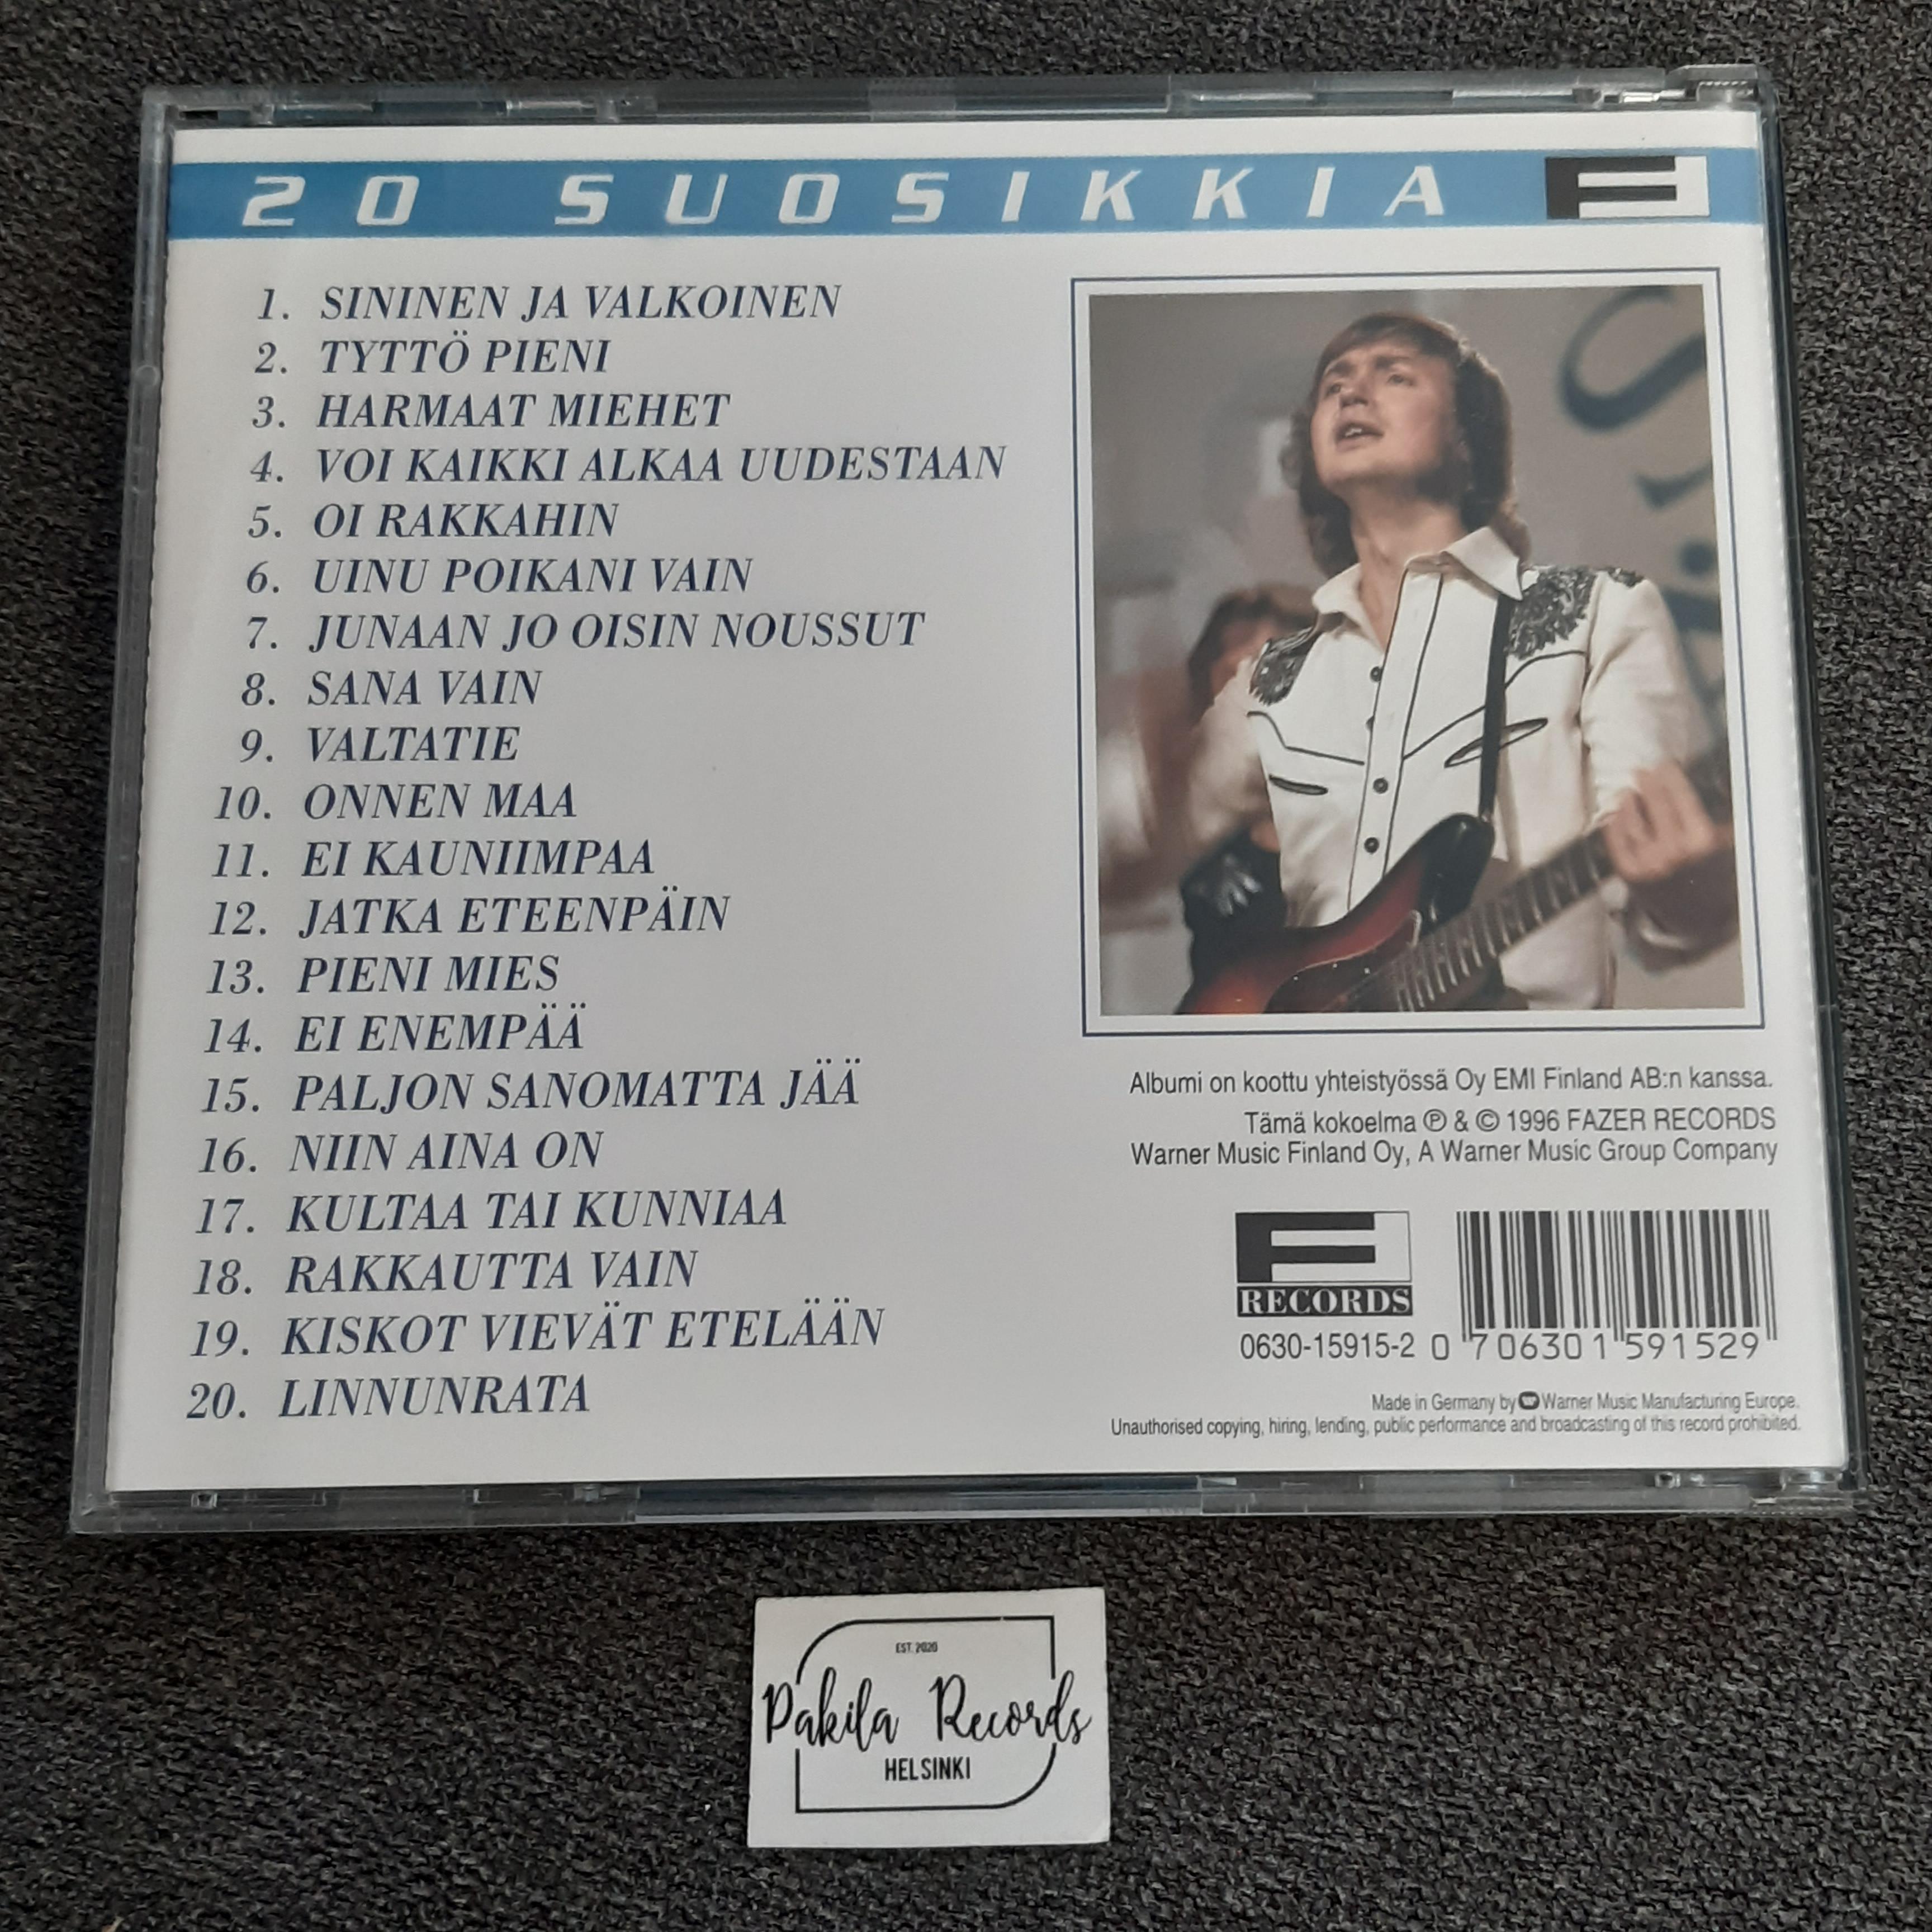 Jukka Kuoppamäki - Sininen ja valkoinen, 20 suosikkia - CD (käytetty)